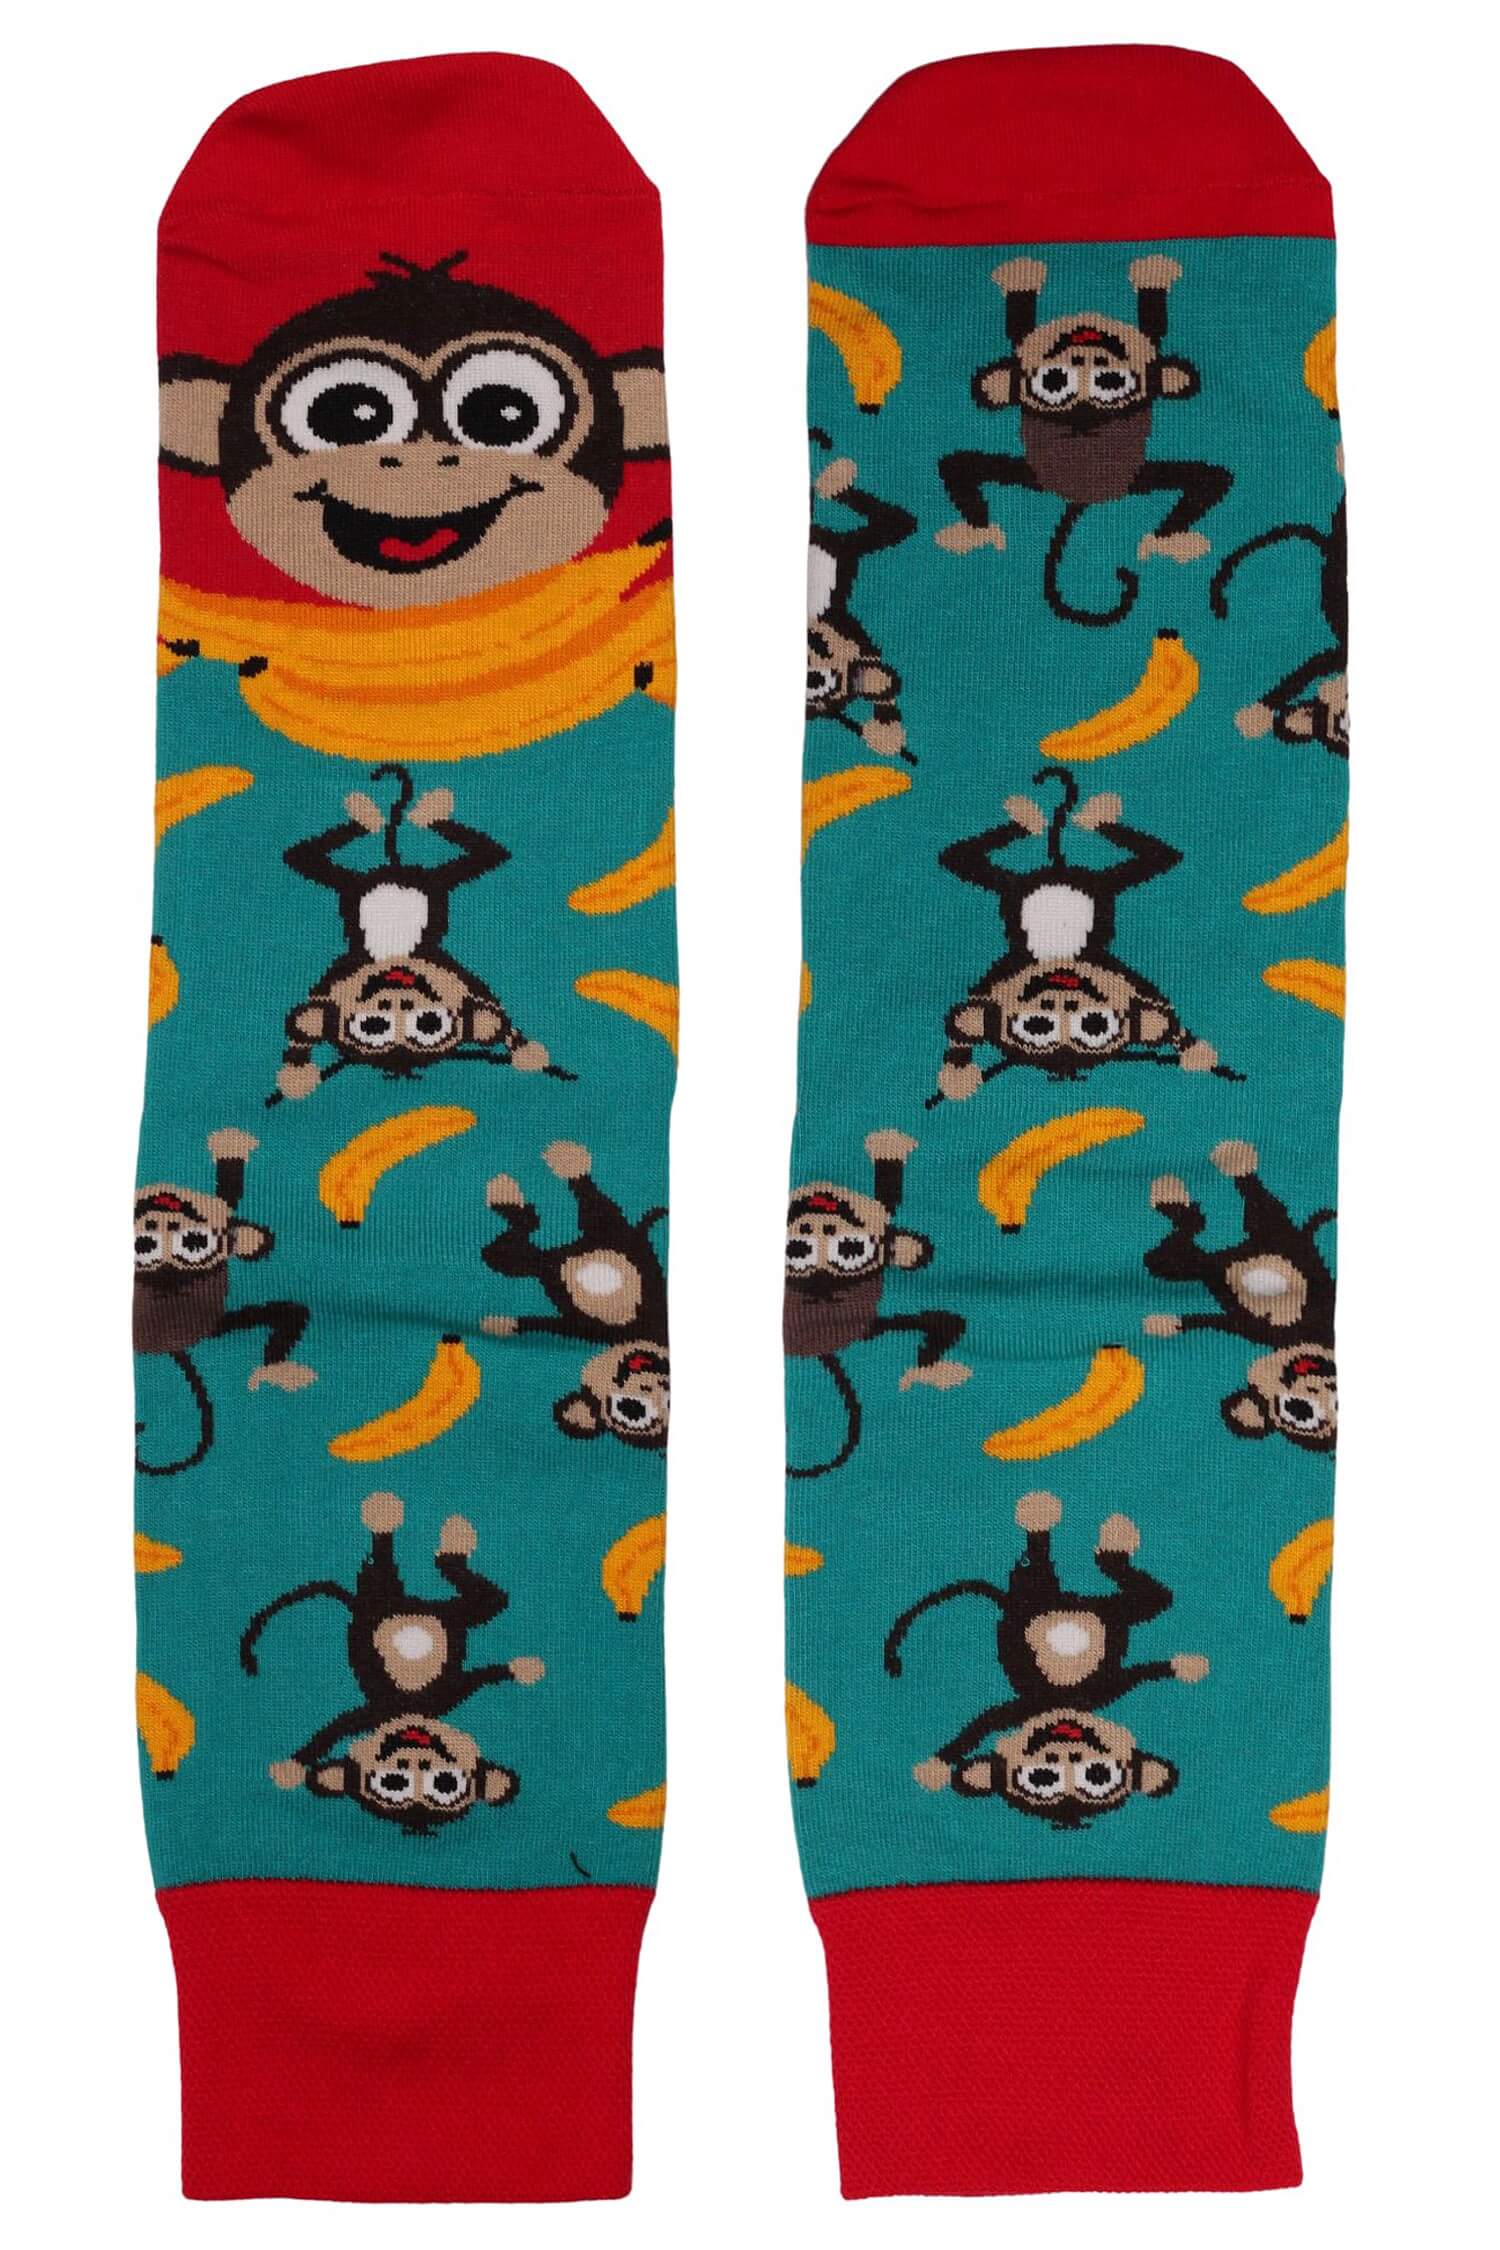 Veselé ponožky každá jiná - opička 1979 36-40 petrolejová